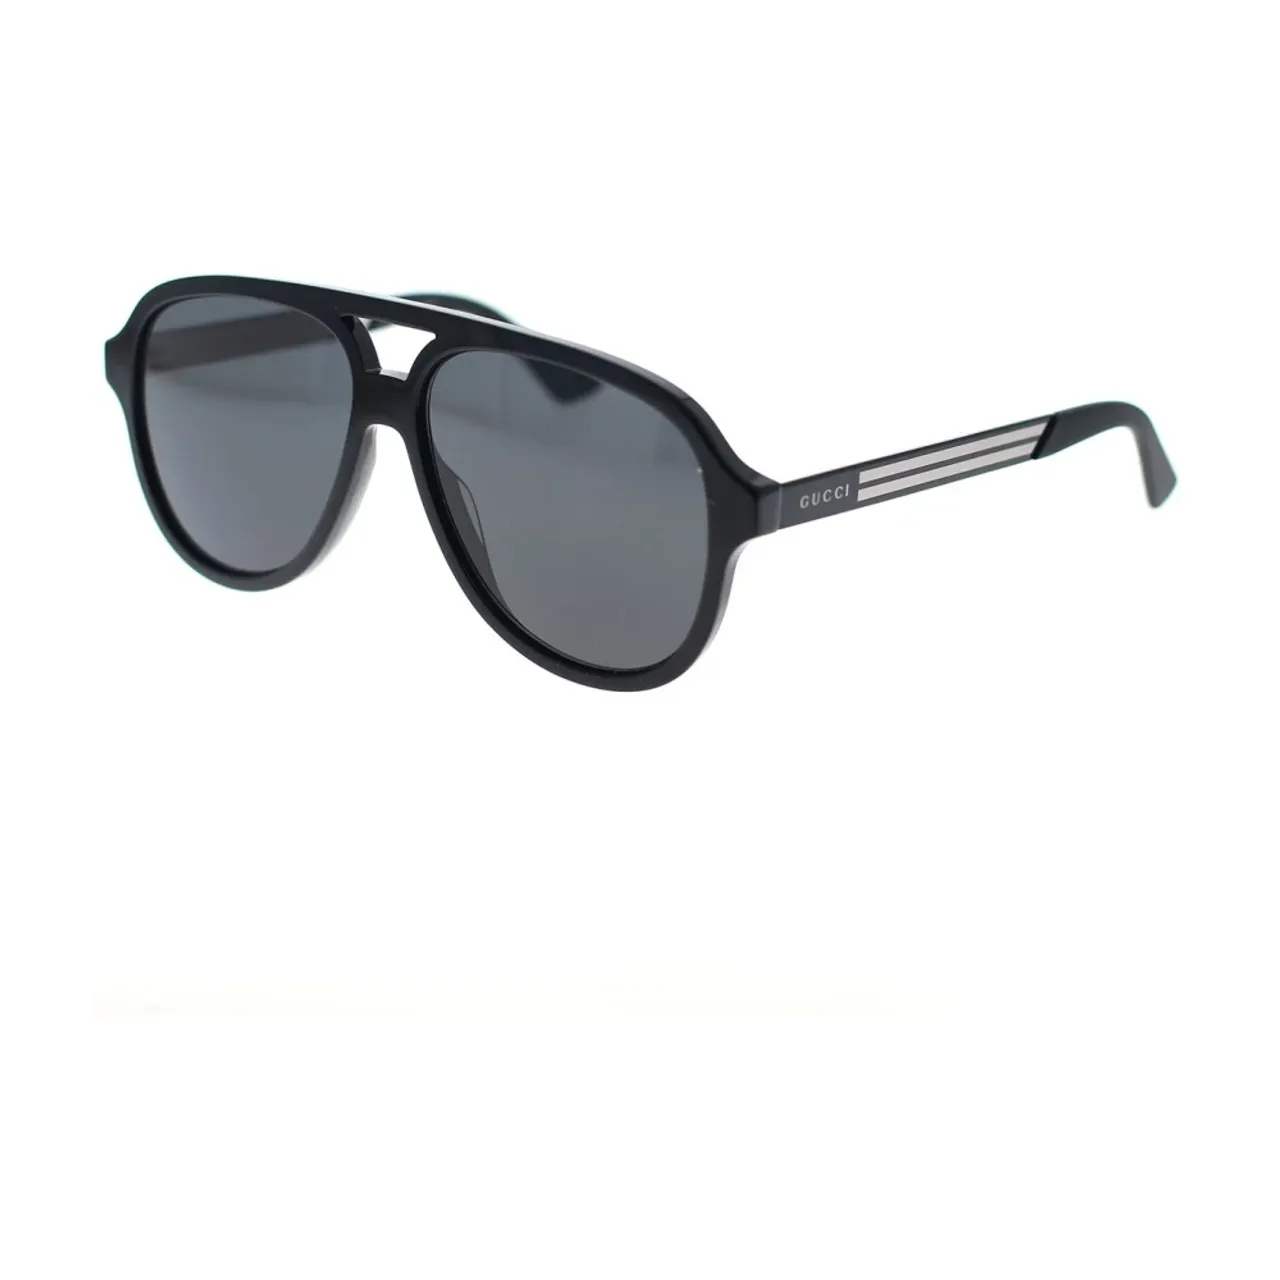 Gucci , Classic Aviator Sunglasses ,Black male, Sizes: